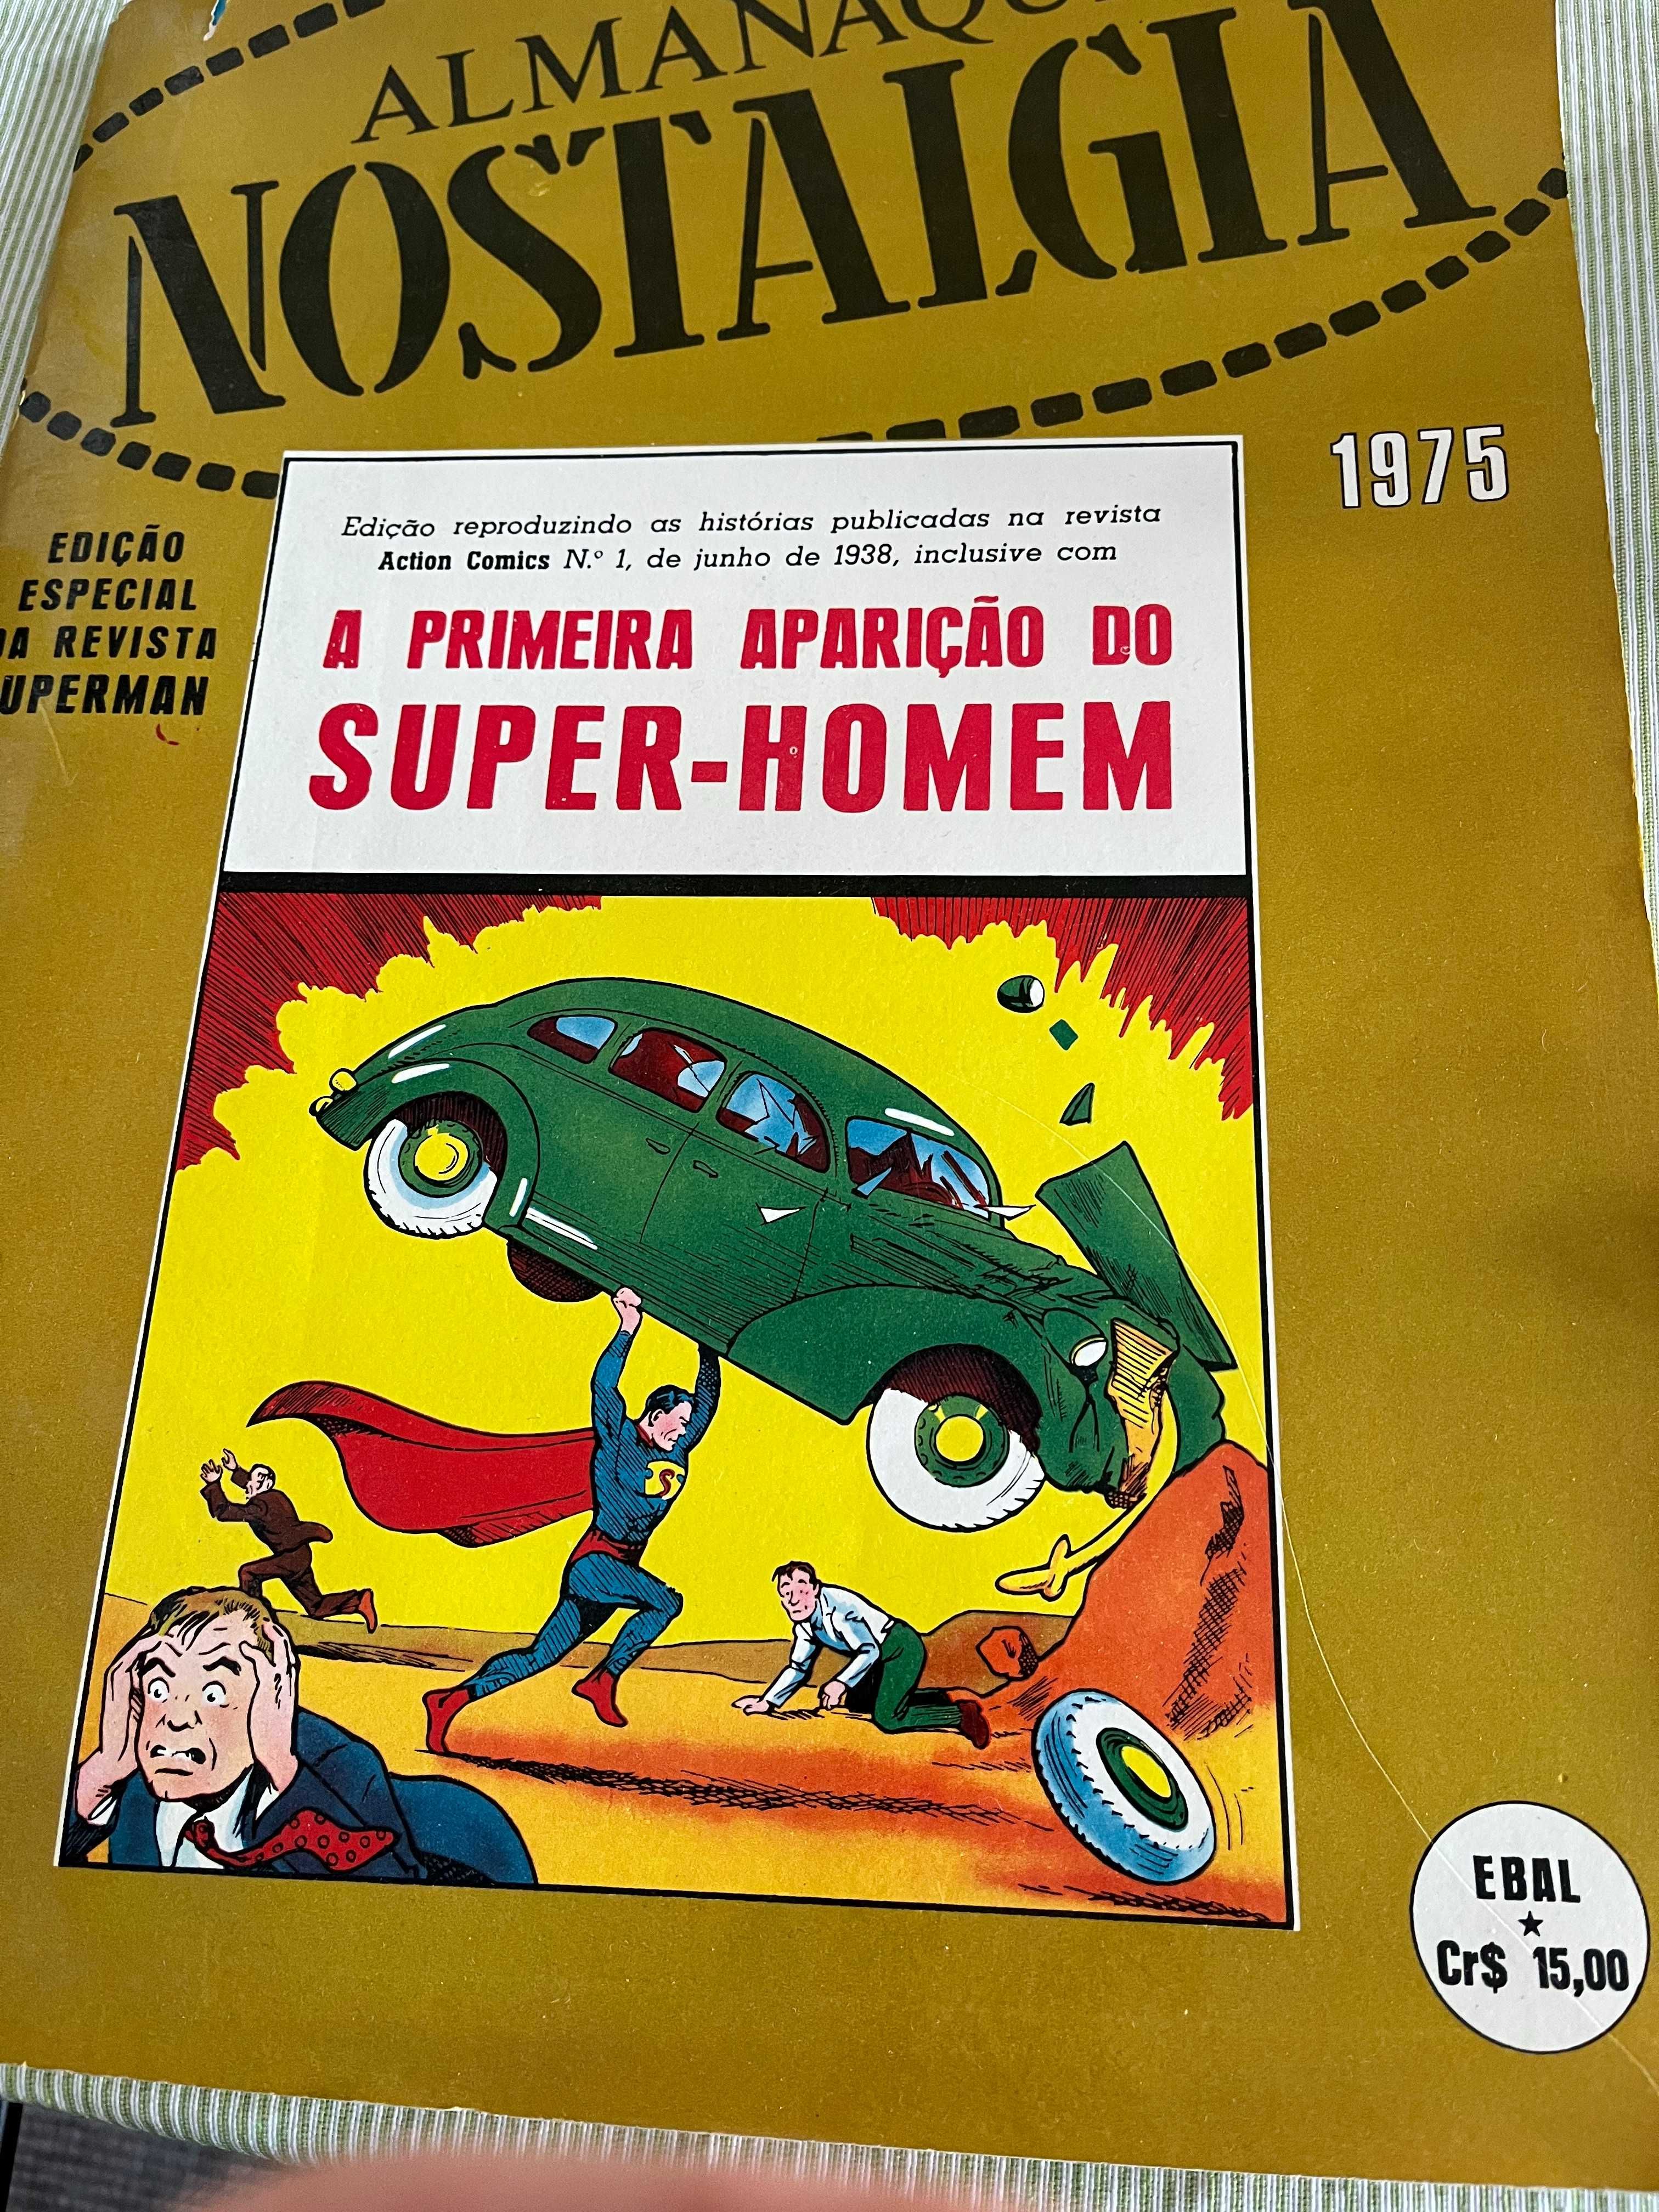 Almanaque Nostalgia 1975 -Banda Desenhada. Superhomem